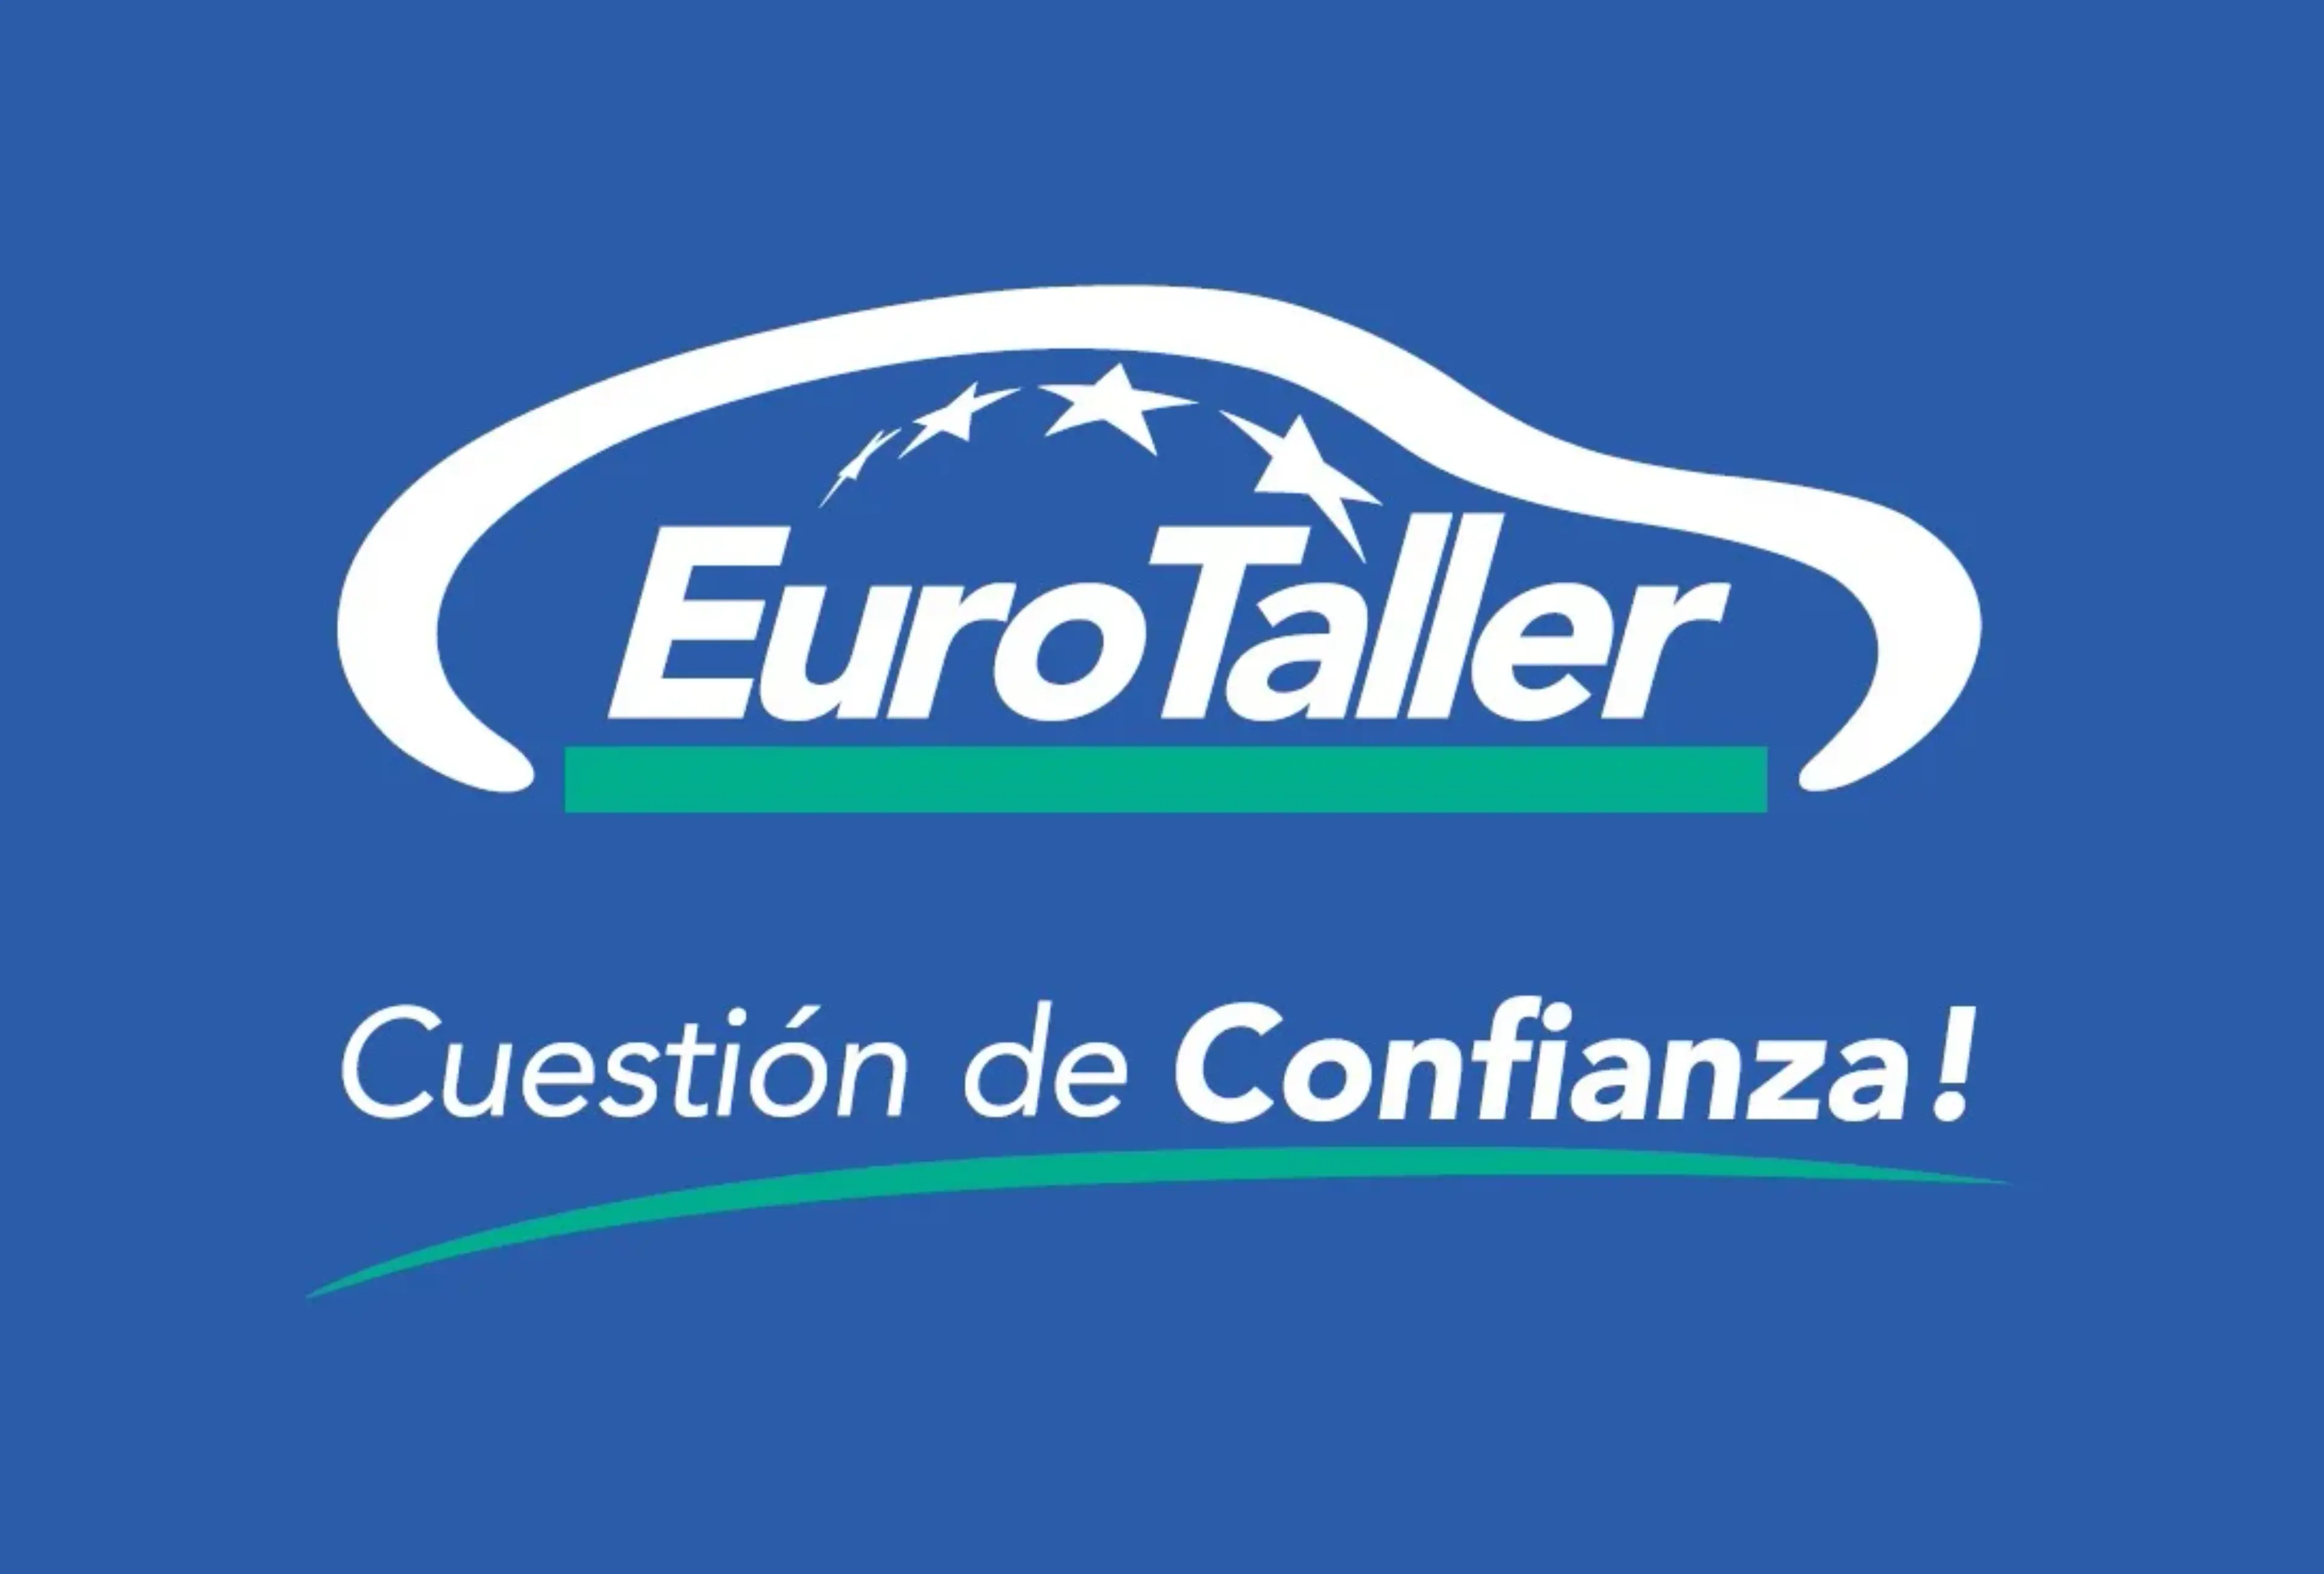 Eurotaller